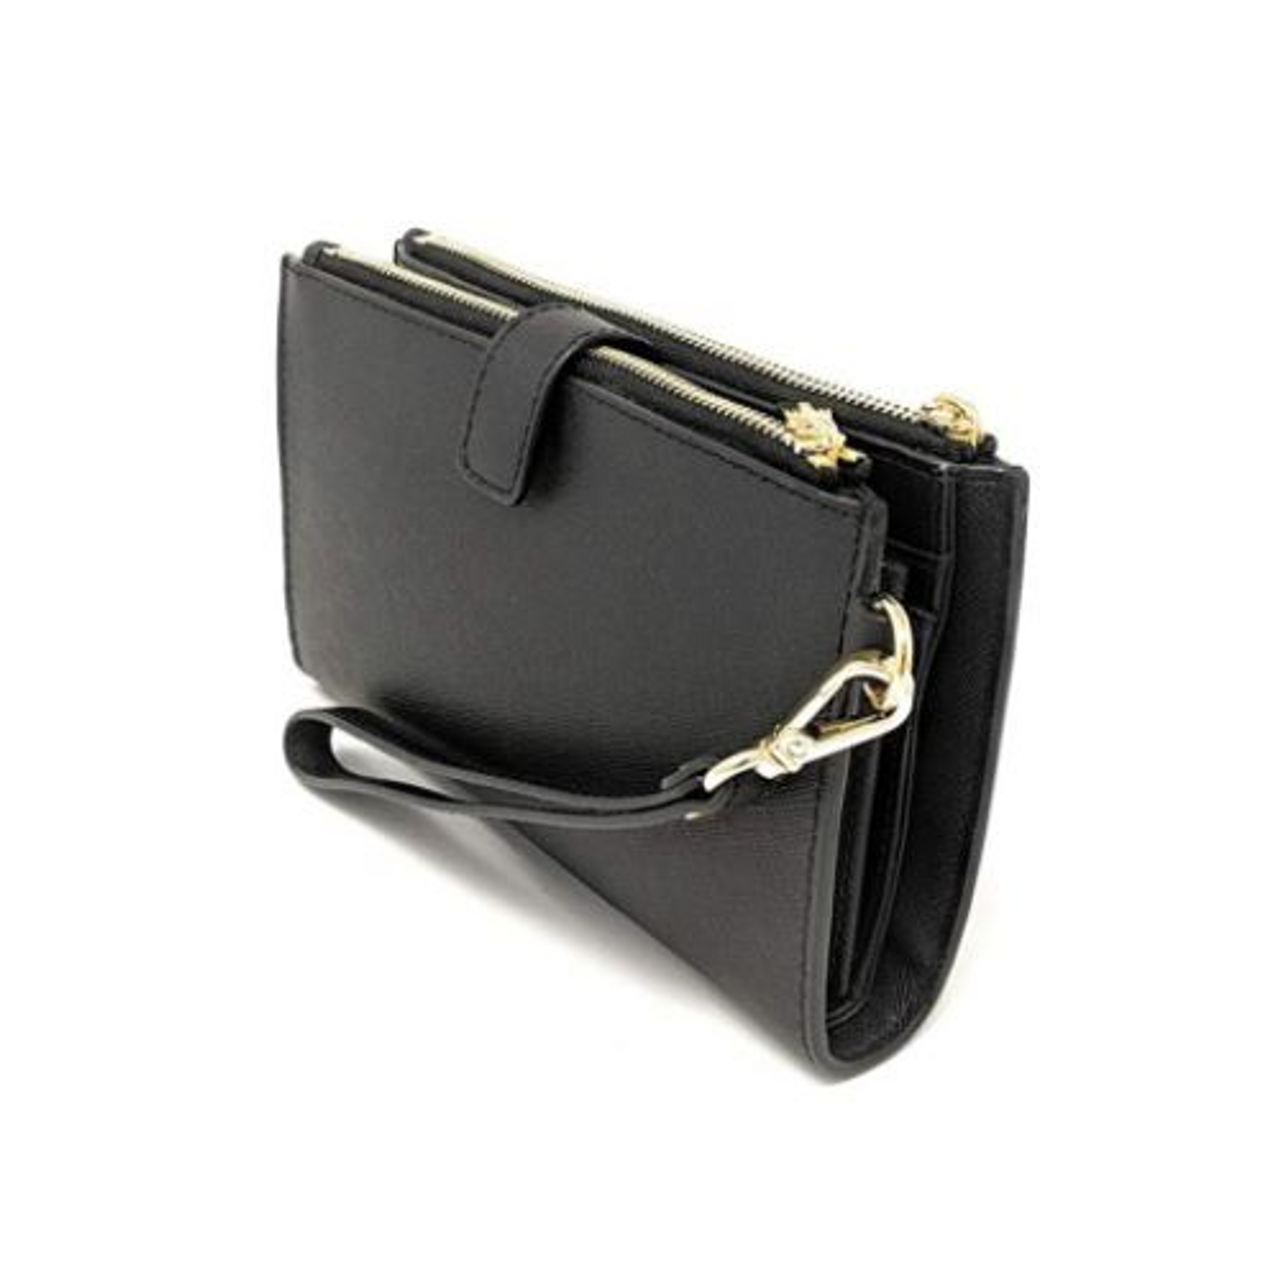 Michael Kors Saffiano Leather Double Zip Wallet Phone Case Wristlet Black  Gold